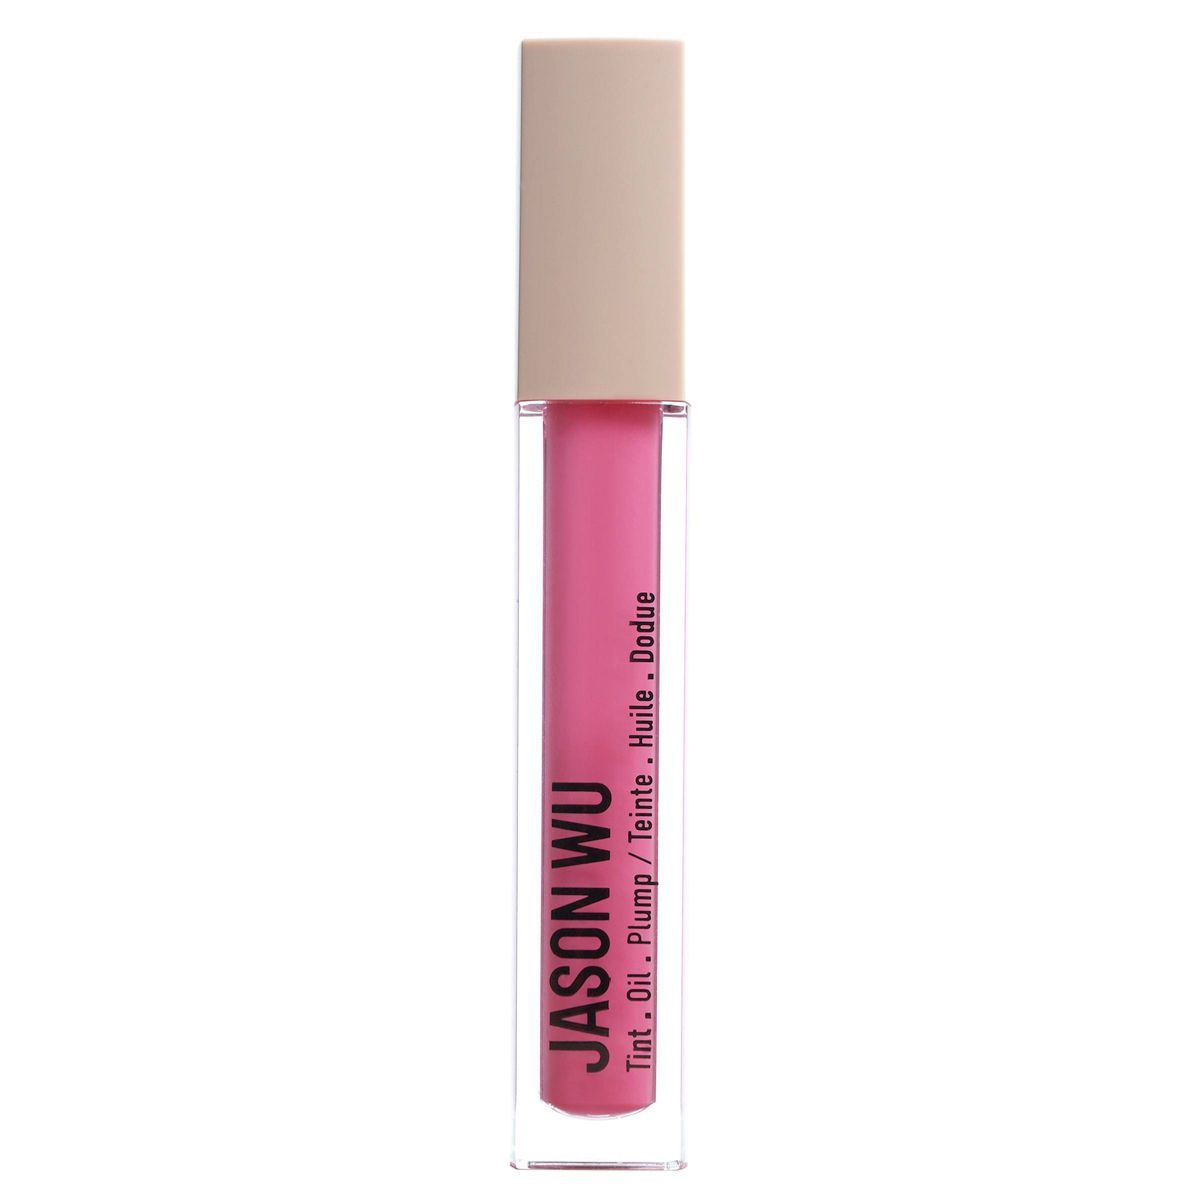 Jason Wu Beauty Tint It Oil It Plump It Lip Makeup - 0.19 fl oz | Target